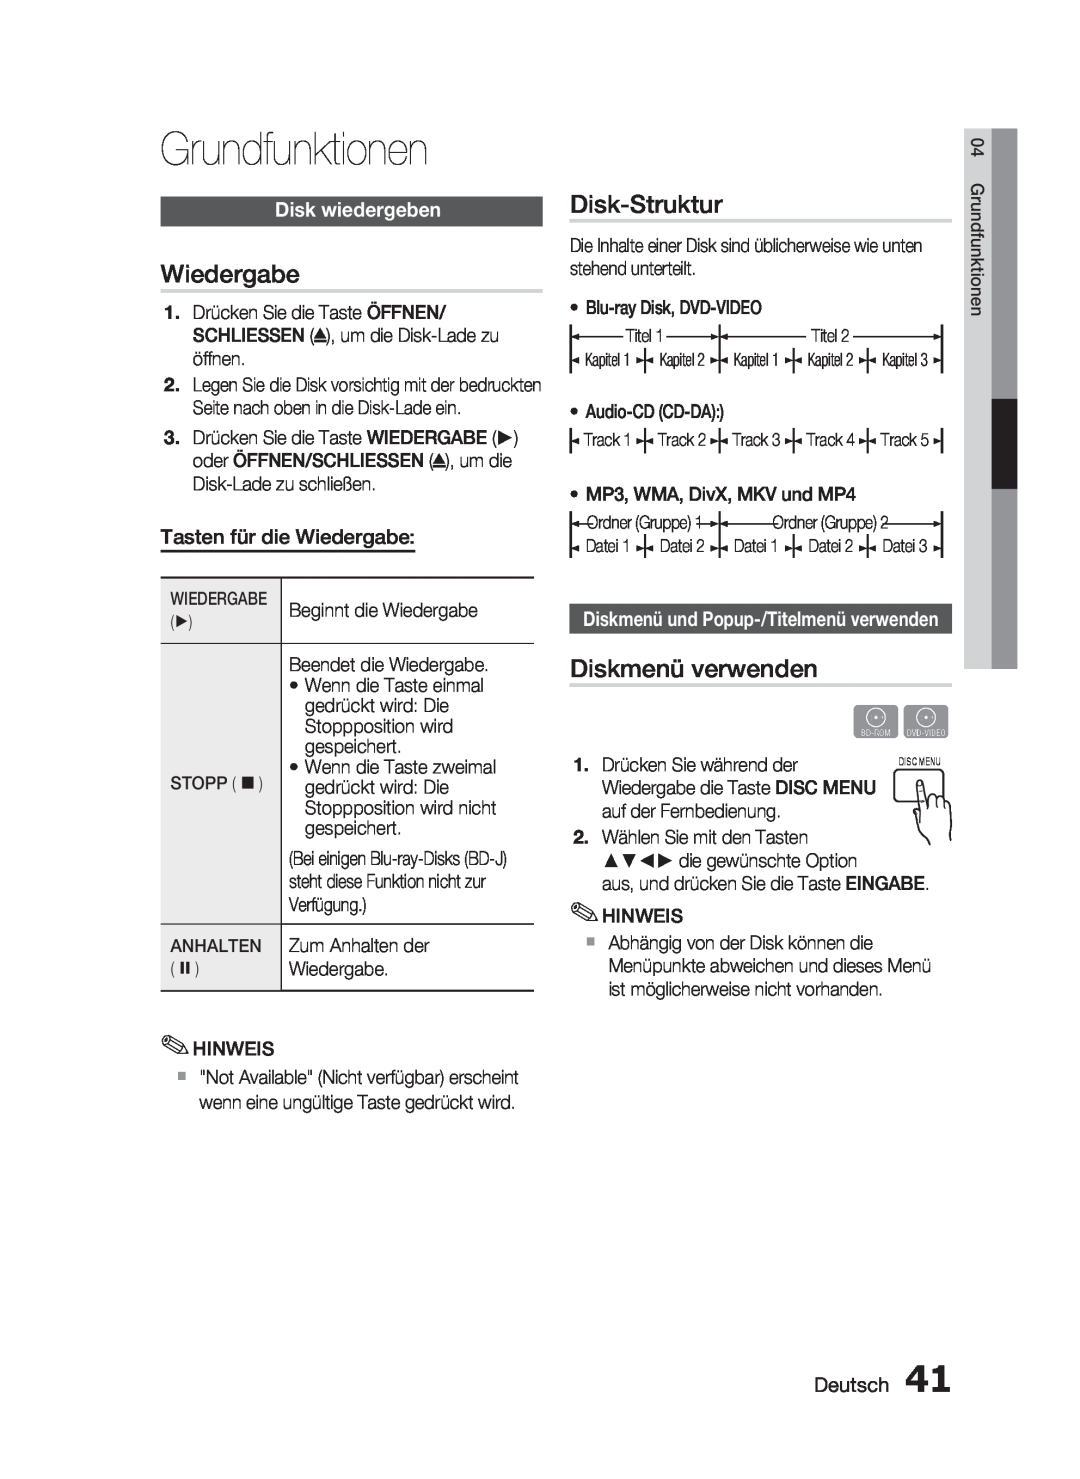 Samsung HT-C6200/XEF manual Grundfunktionen, Wiedergabe, Disk-Struktur, Diskmenü verwenden, Disk wiedergeben, Deutsch 